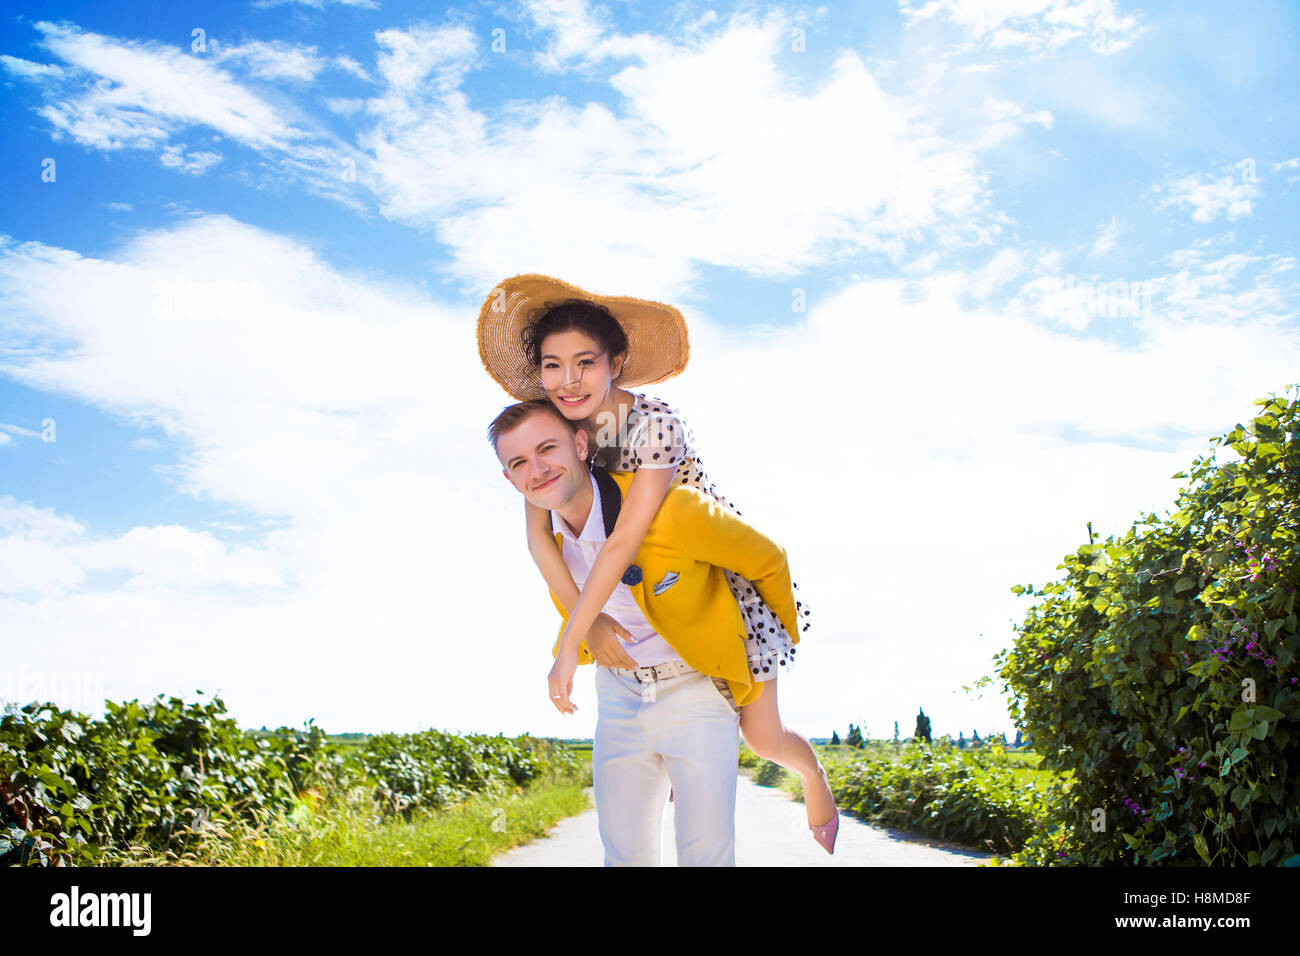 Portrait of happy man piggybacking woman sur sentier au milieu de terrain contre ciel nuageux Banque D'Images